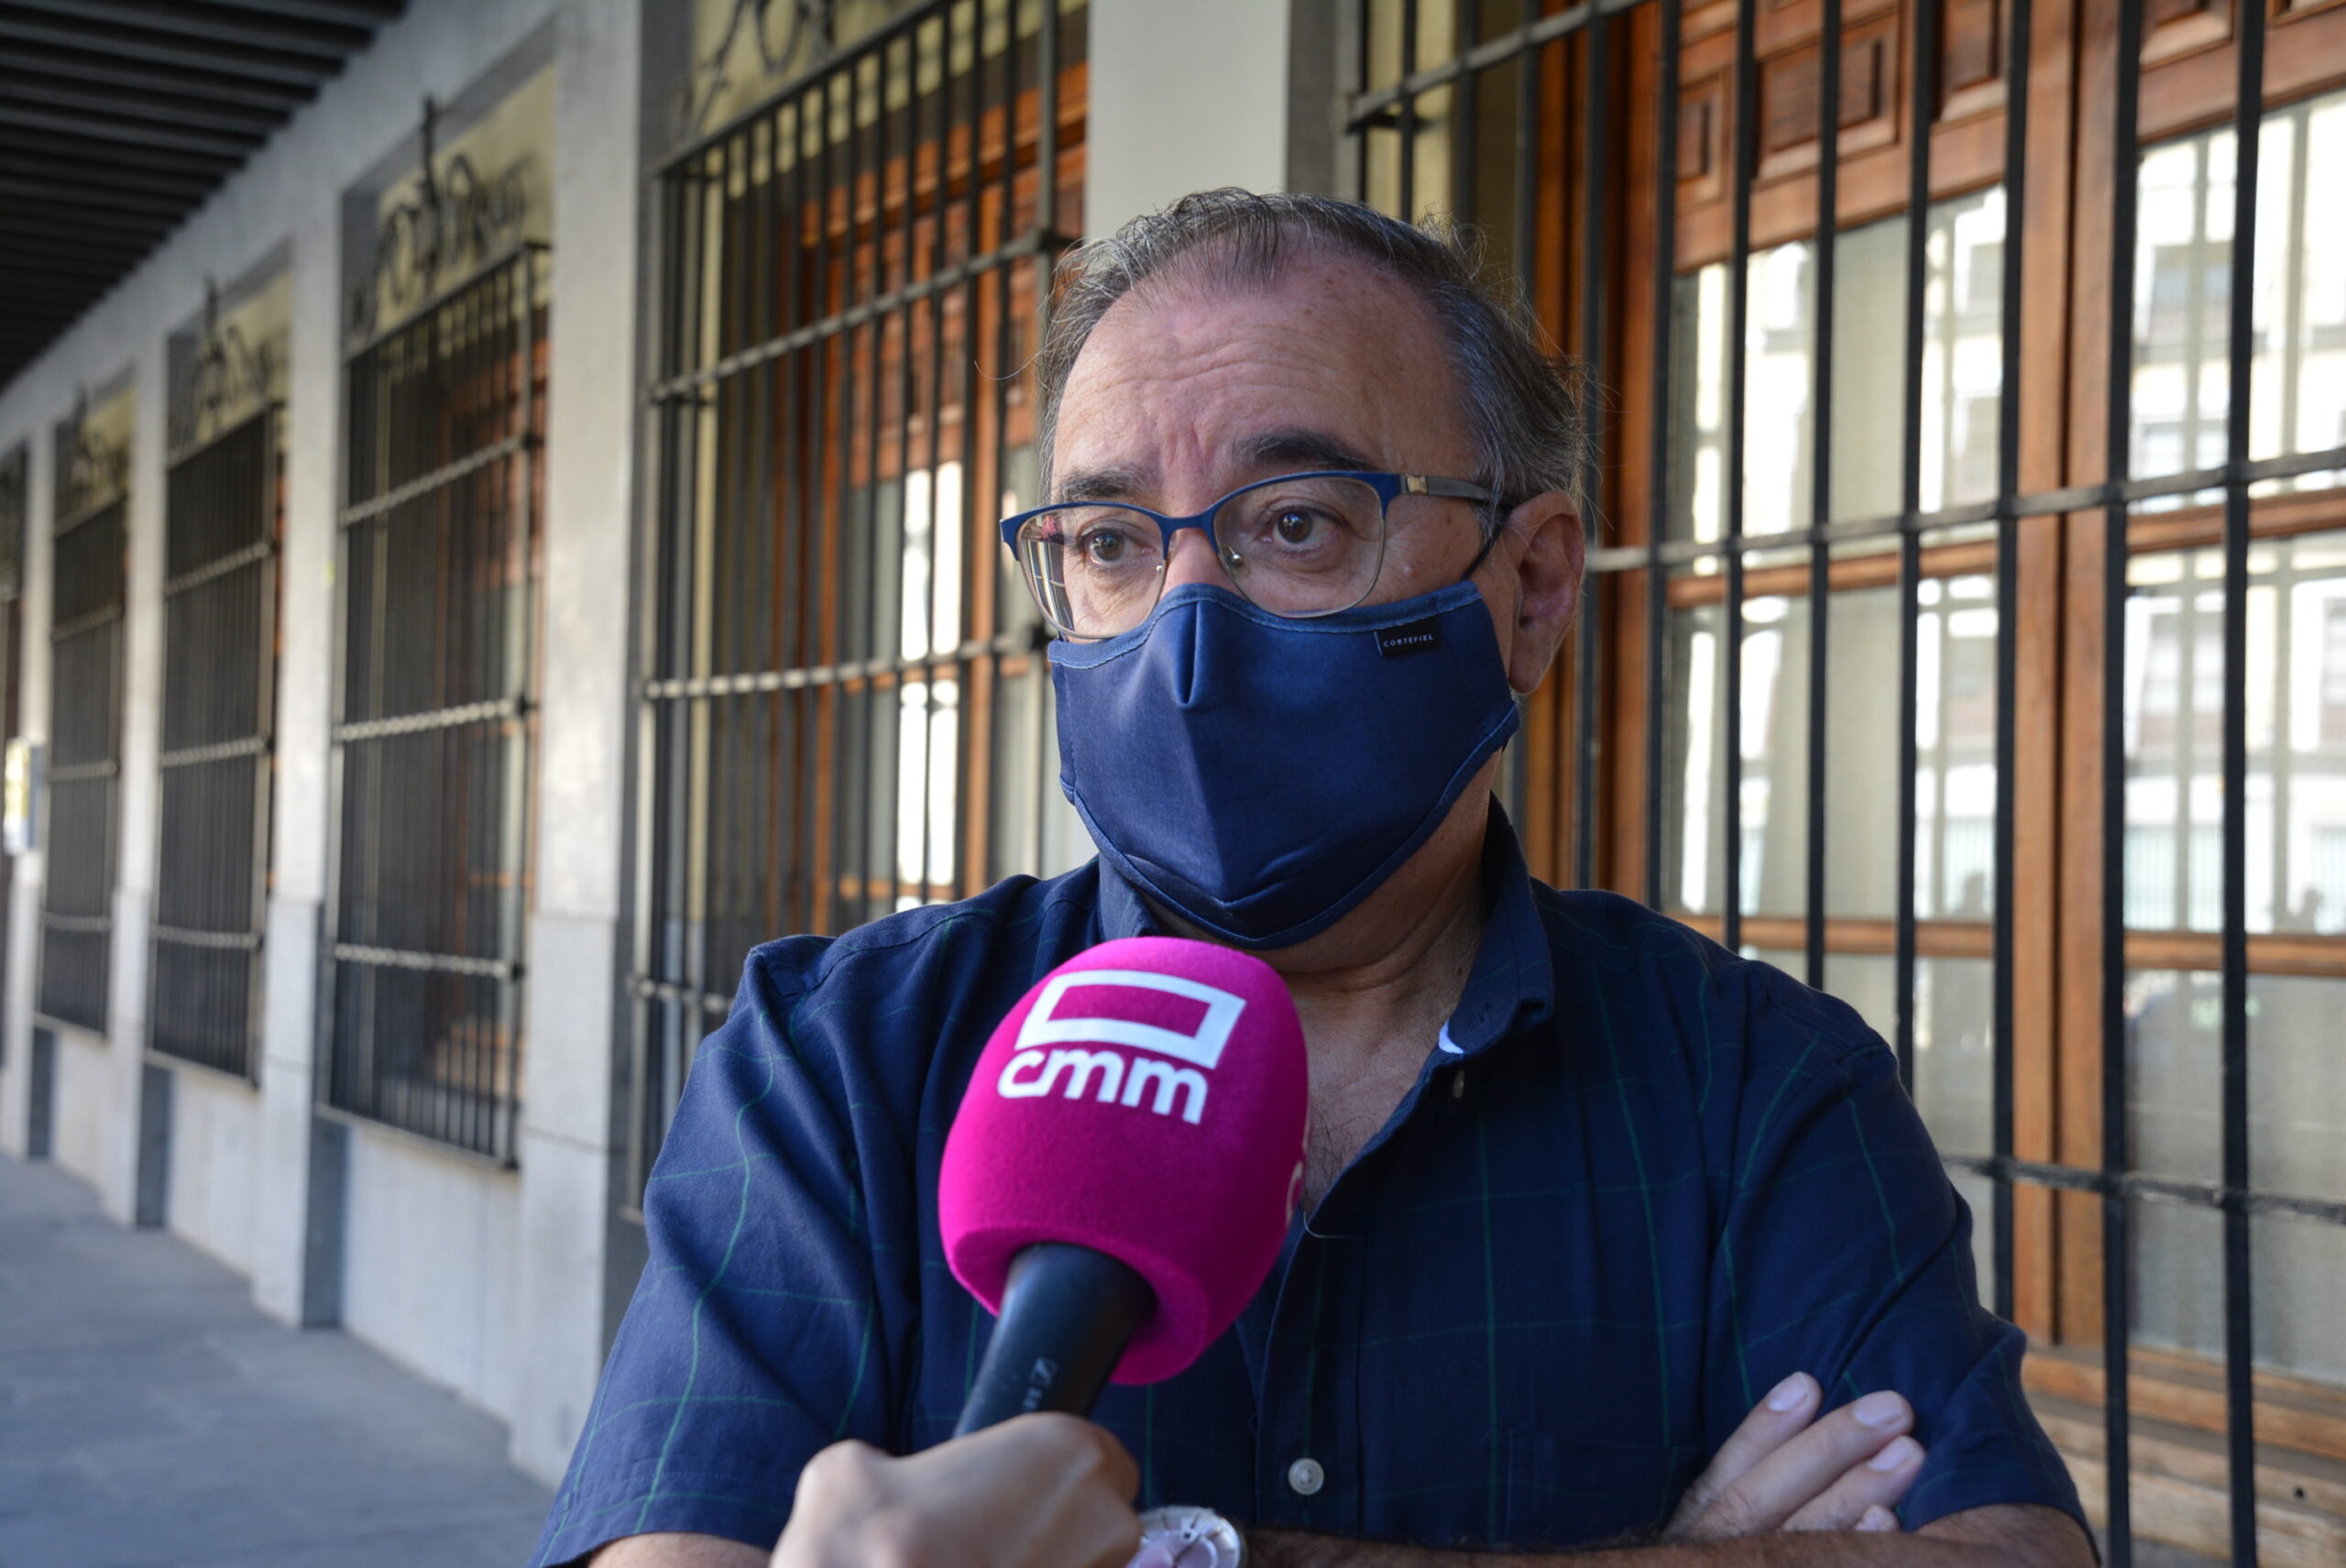 Mora critica la “incoherencia” de Núñez y sus políticas contradictorias “simplemente por oponerse al Gobierno”